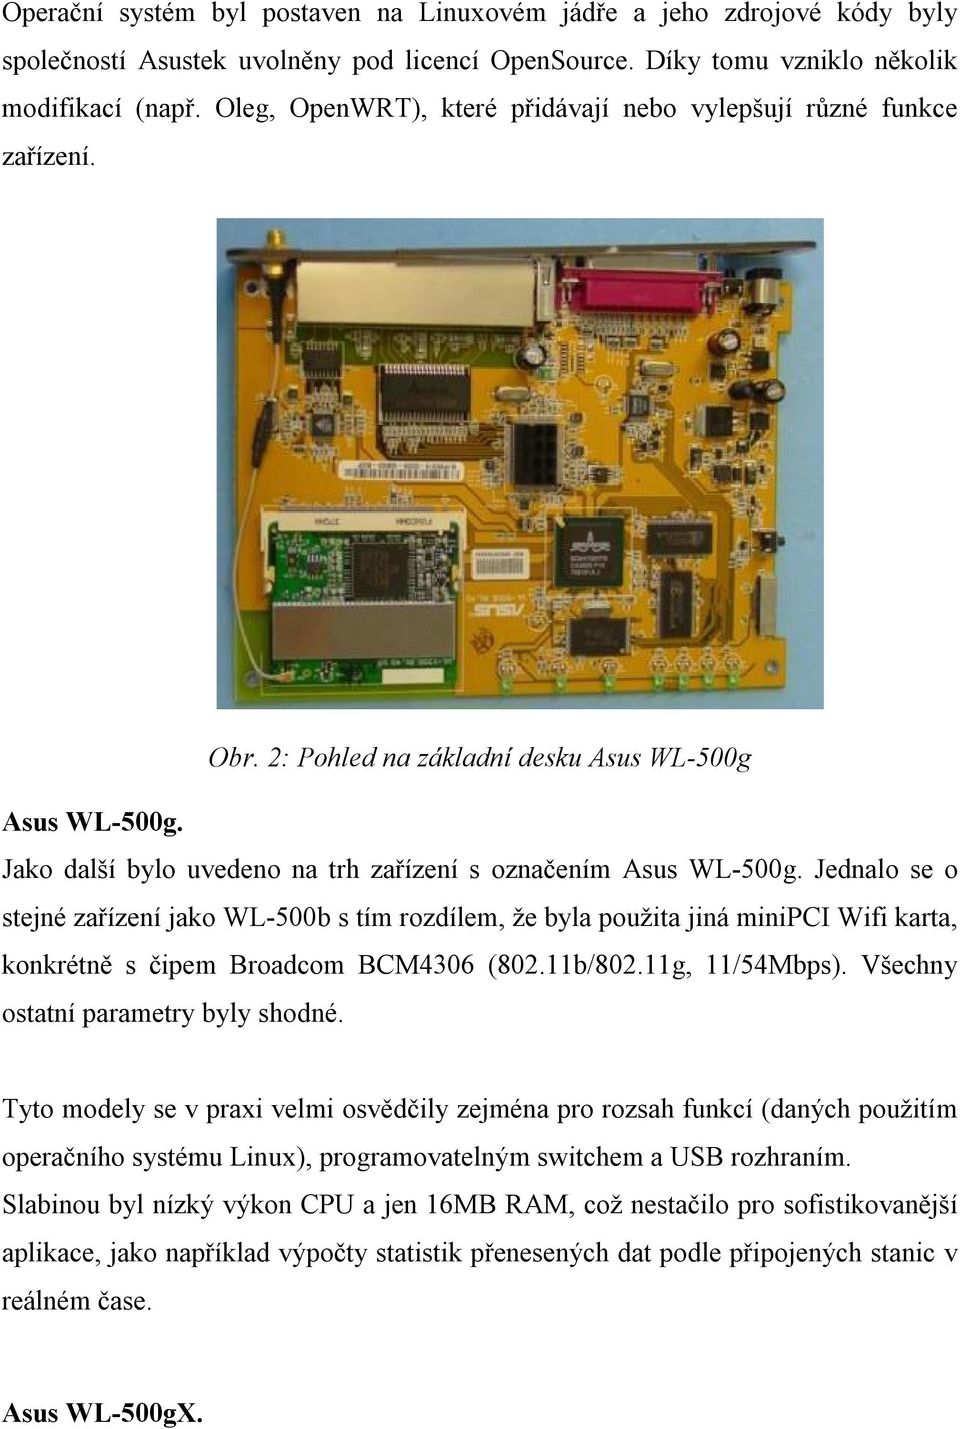 Jednalo se o stejné zařízení jako WL-500b s tím rozdílem, že byla použita jiná minipci Wifi karta, konkrétně s čipem Broadcom BCM4306 (802.11b/802.11g, 11/54Mbps).